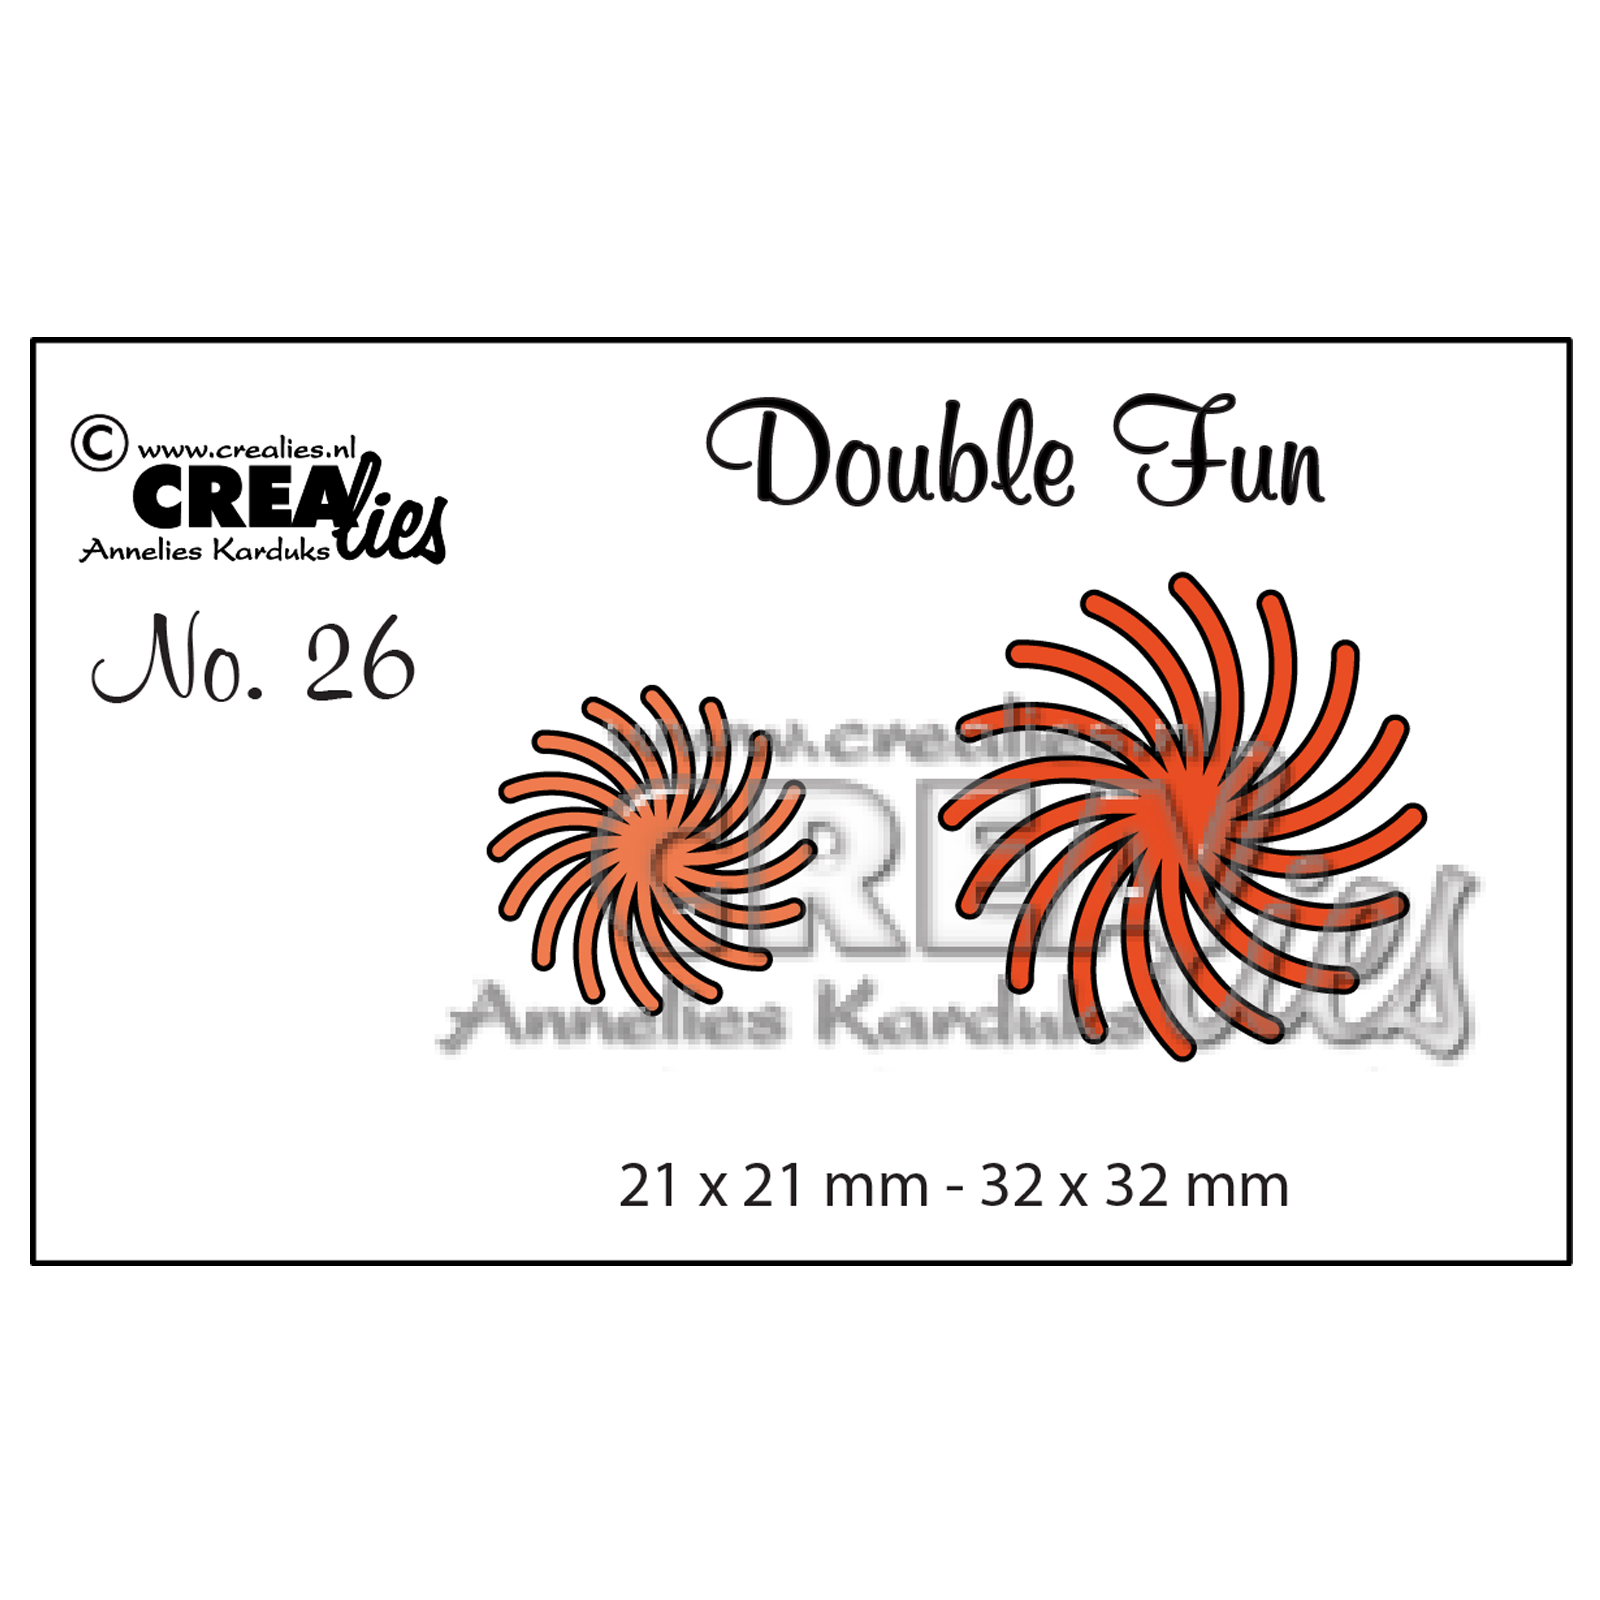 Crealies • Double fun plantilla de corte no.26 Twisted sun